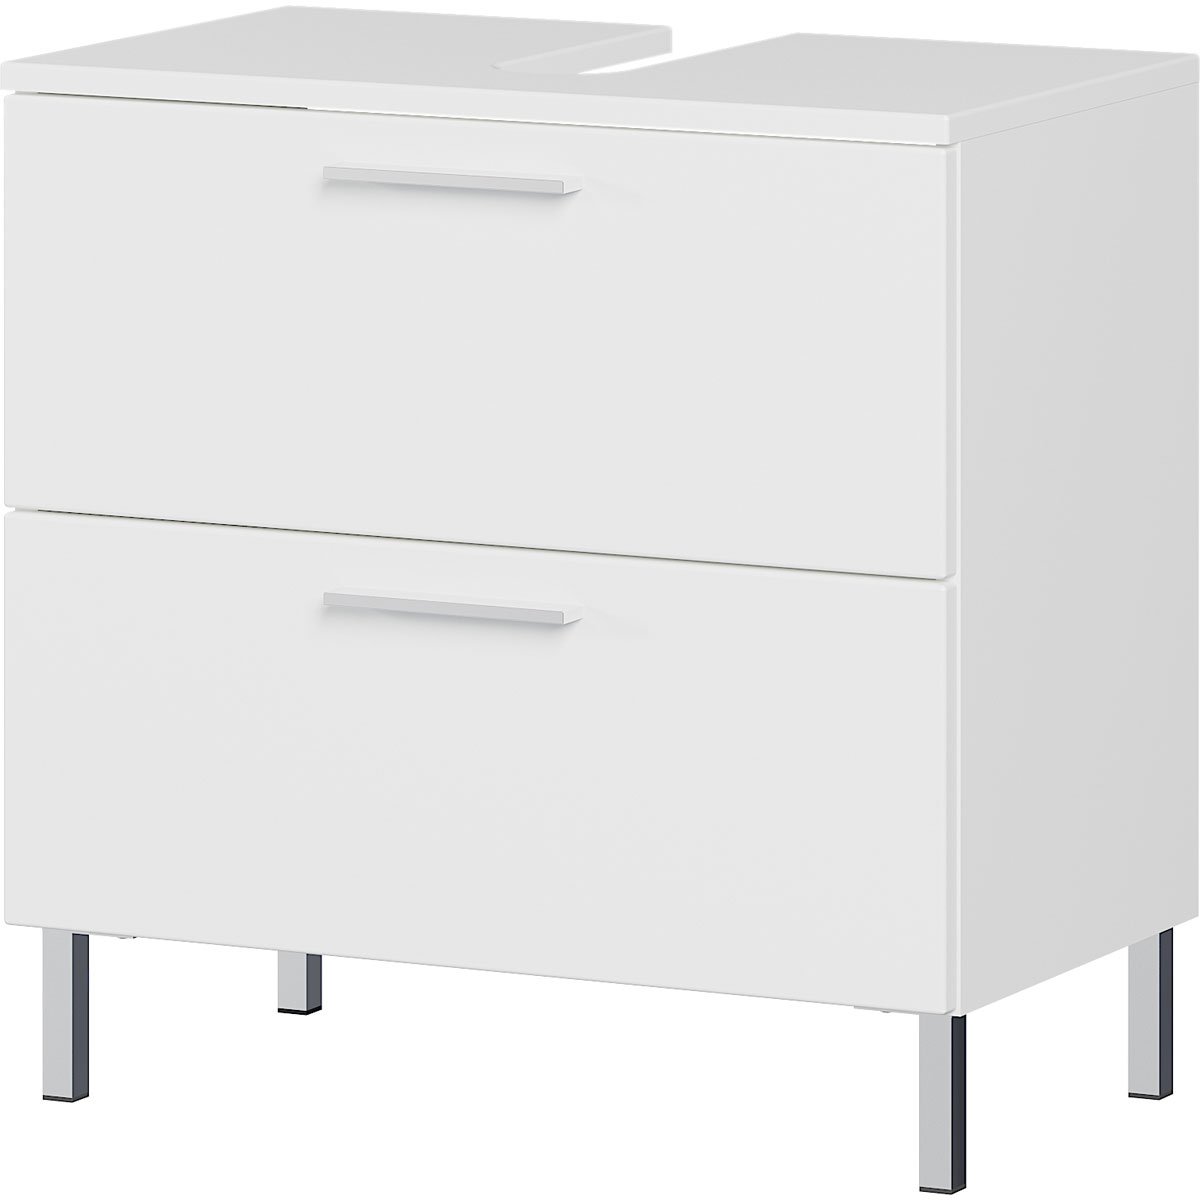 Badmöbel-Set 2, weiß, 4-tlg., inkl. Waschbeckenunterschrank, Spiegel, Hängeschrank und Unterschrank, Supermatt